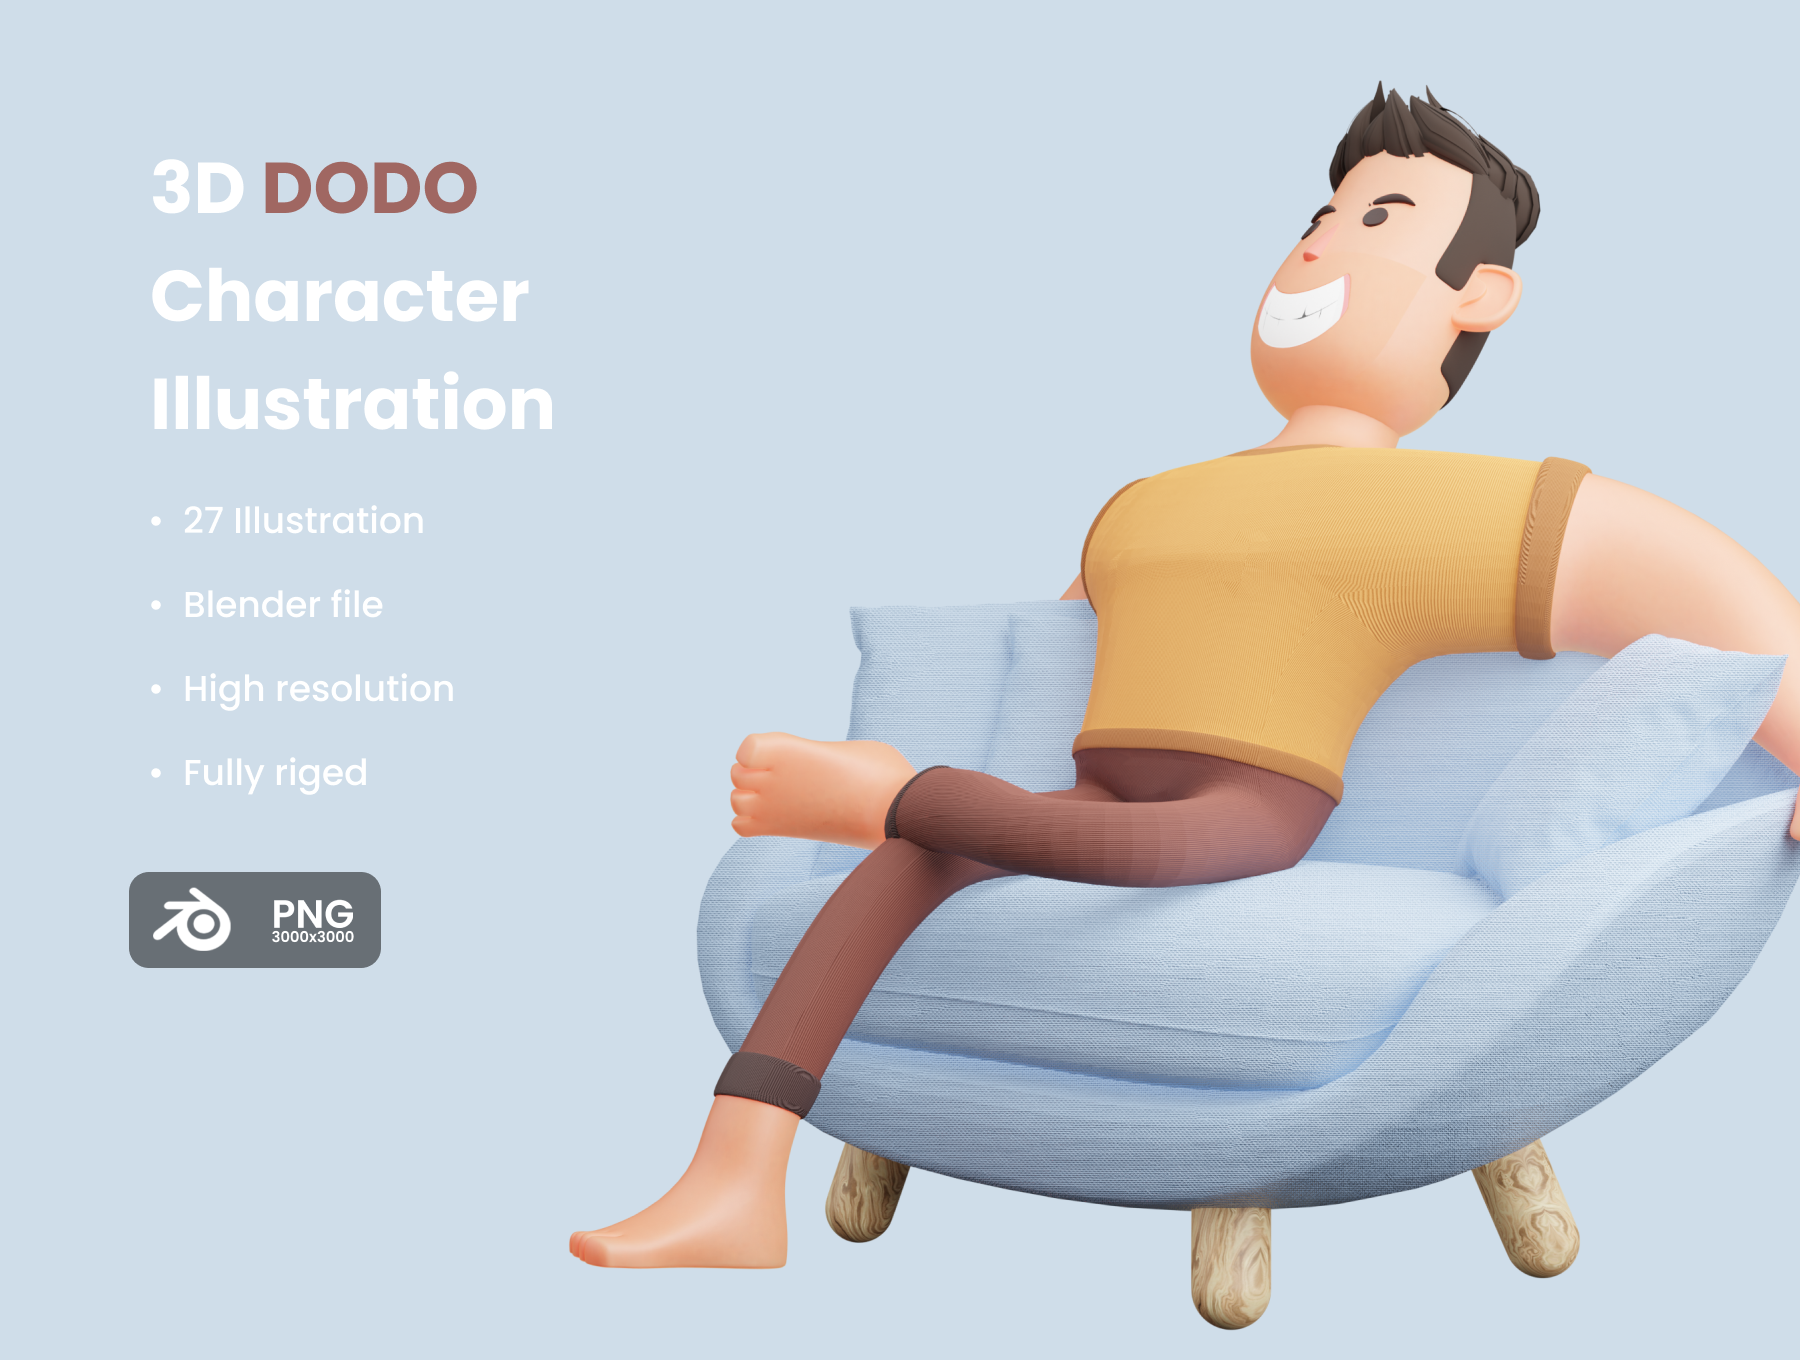 高品质三维渲染胖乎乎的卡通人物插画素材合辑 DODO 3D